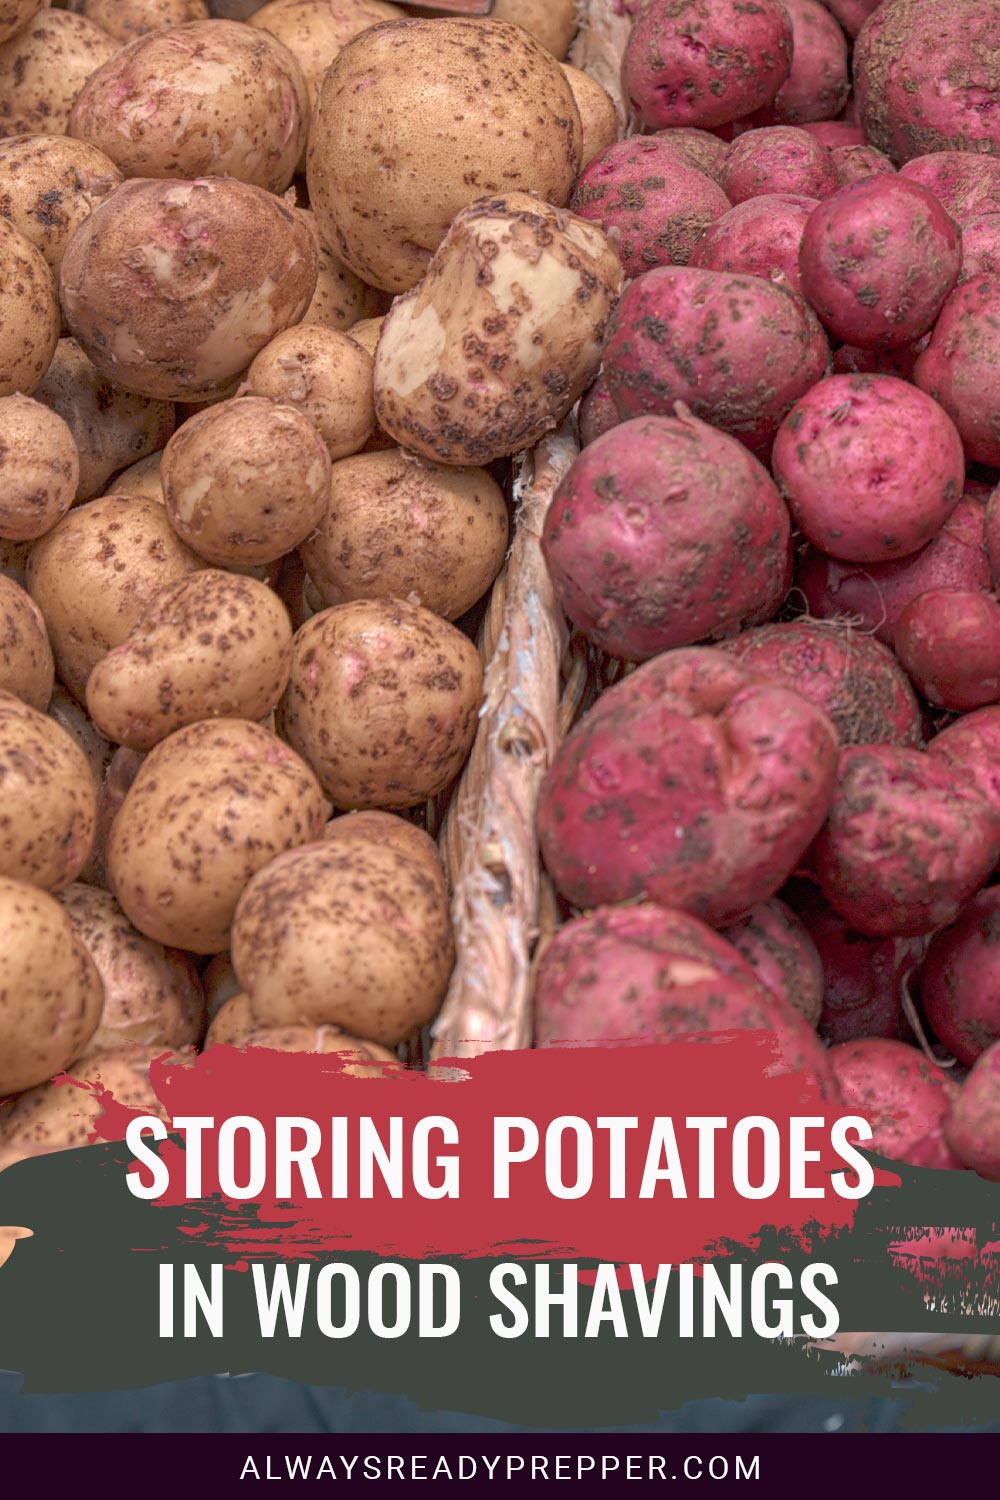 Regular and Red potatoes - Storing Potatoes in Wood Shavings